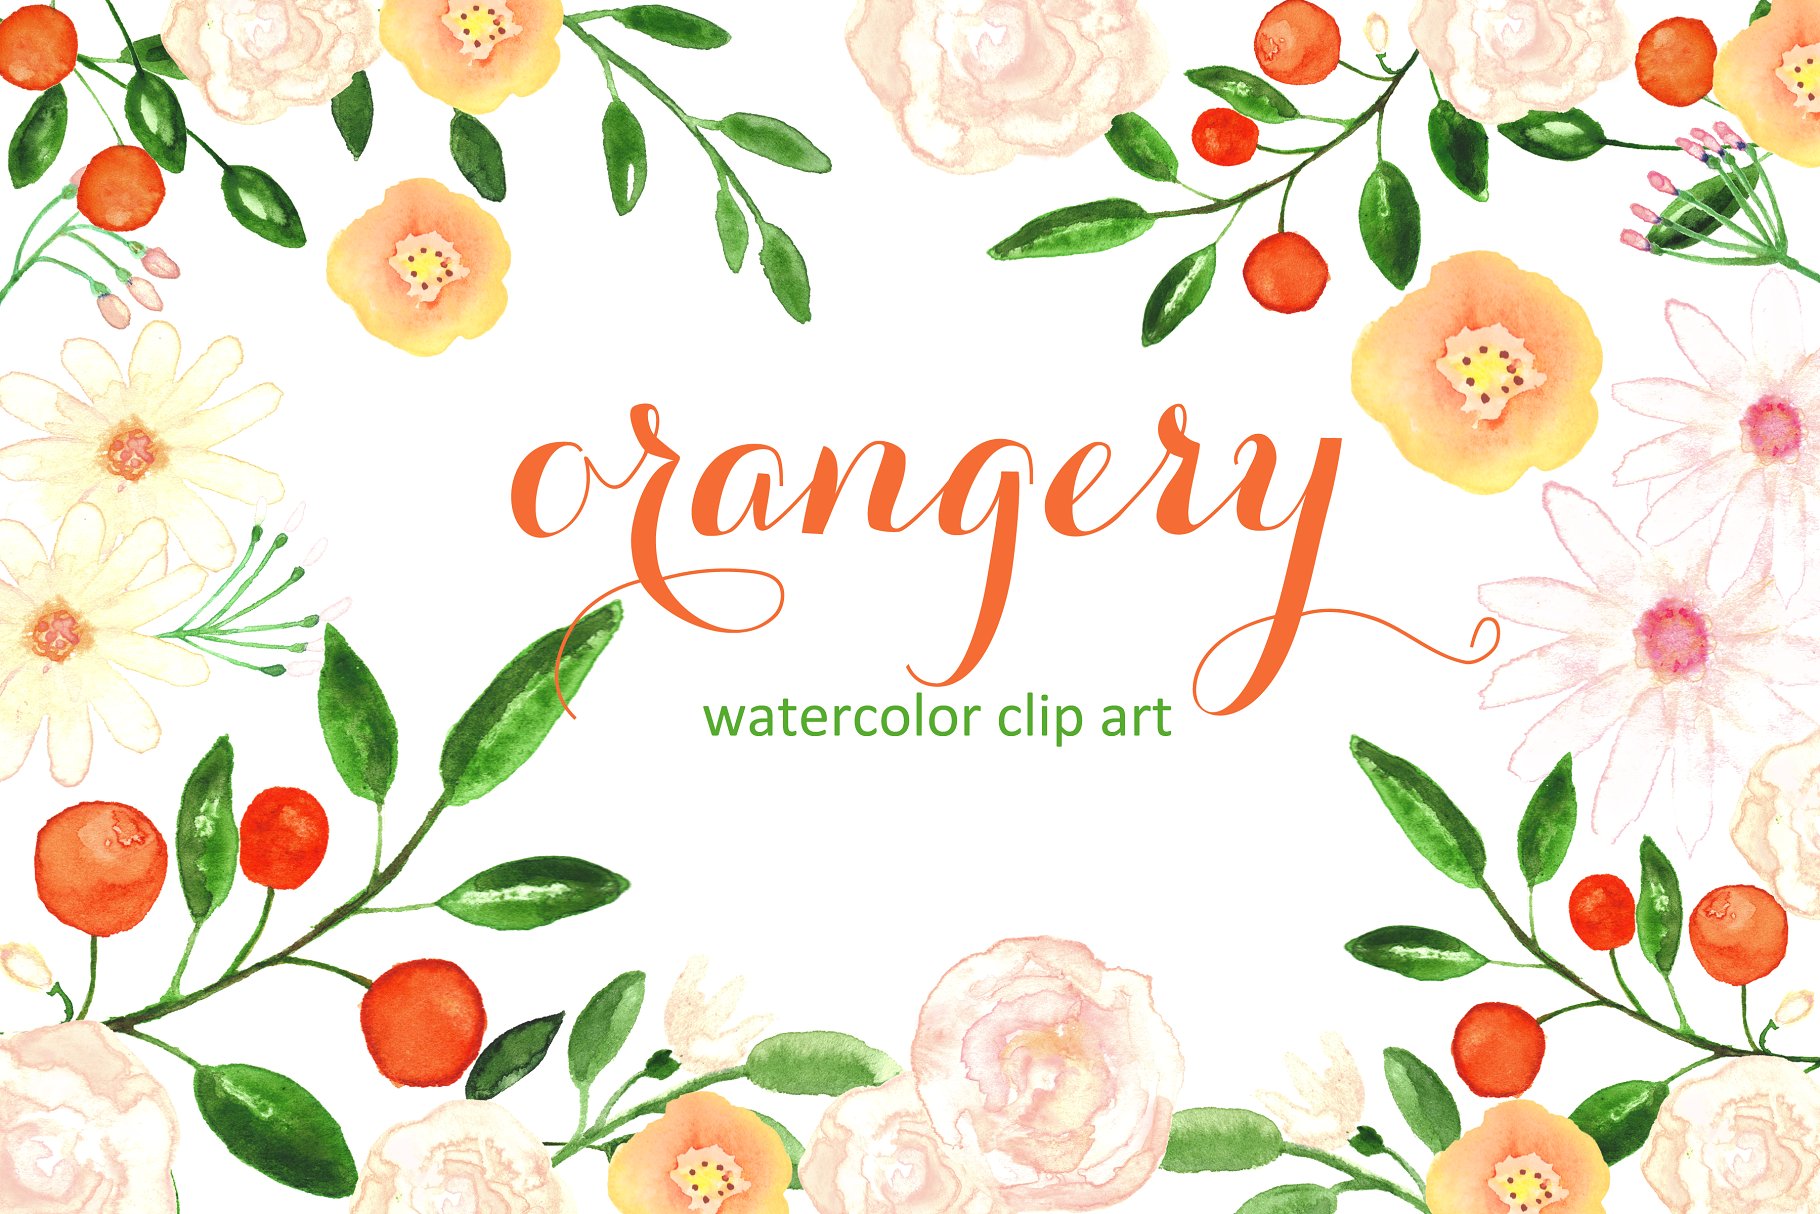 橘园水彩剪贴画素材 Orangery. Watercolor clipart.插图